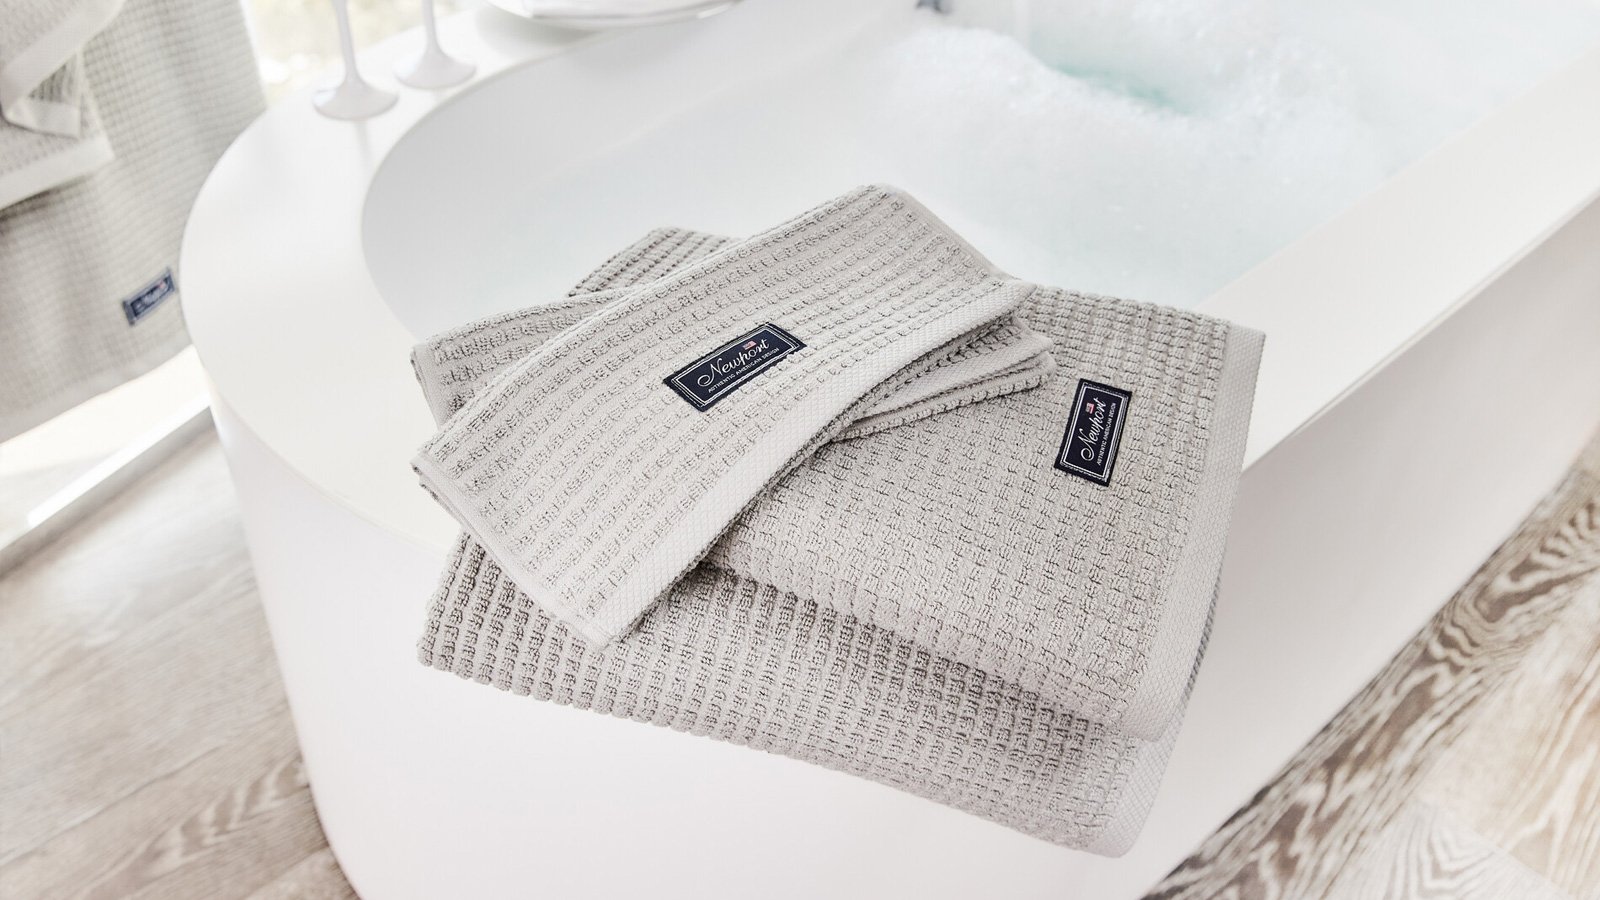 Badelaken - Store håndklær og badelaken - Newport